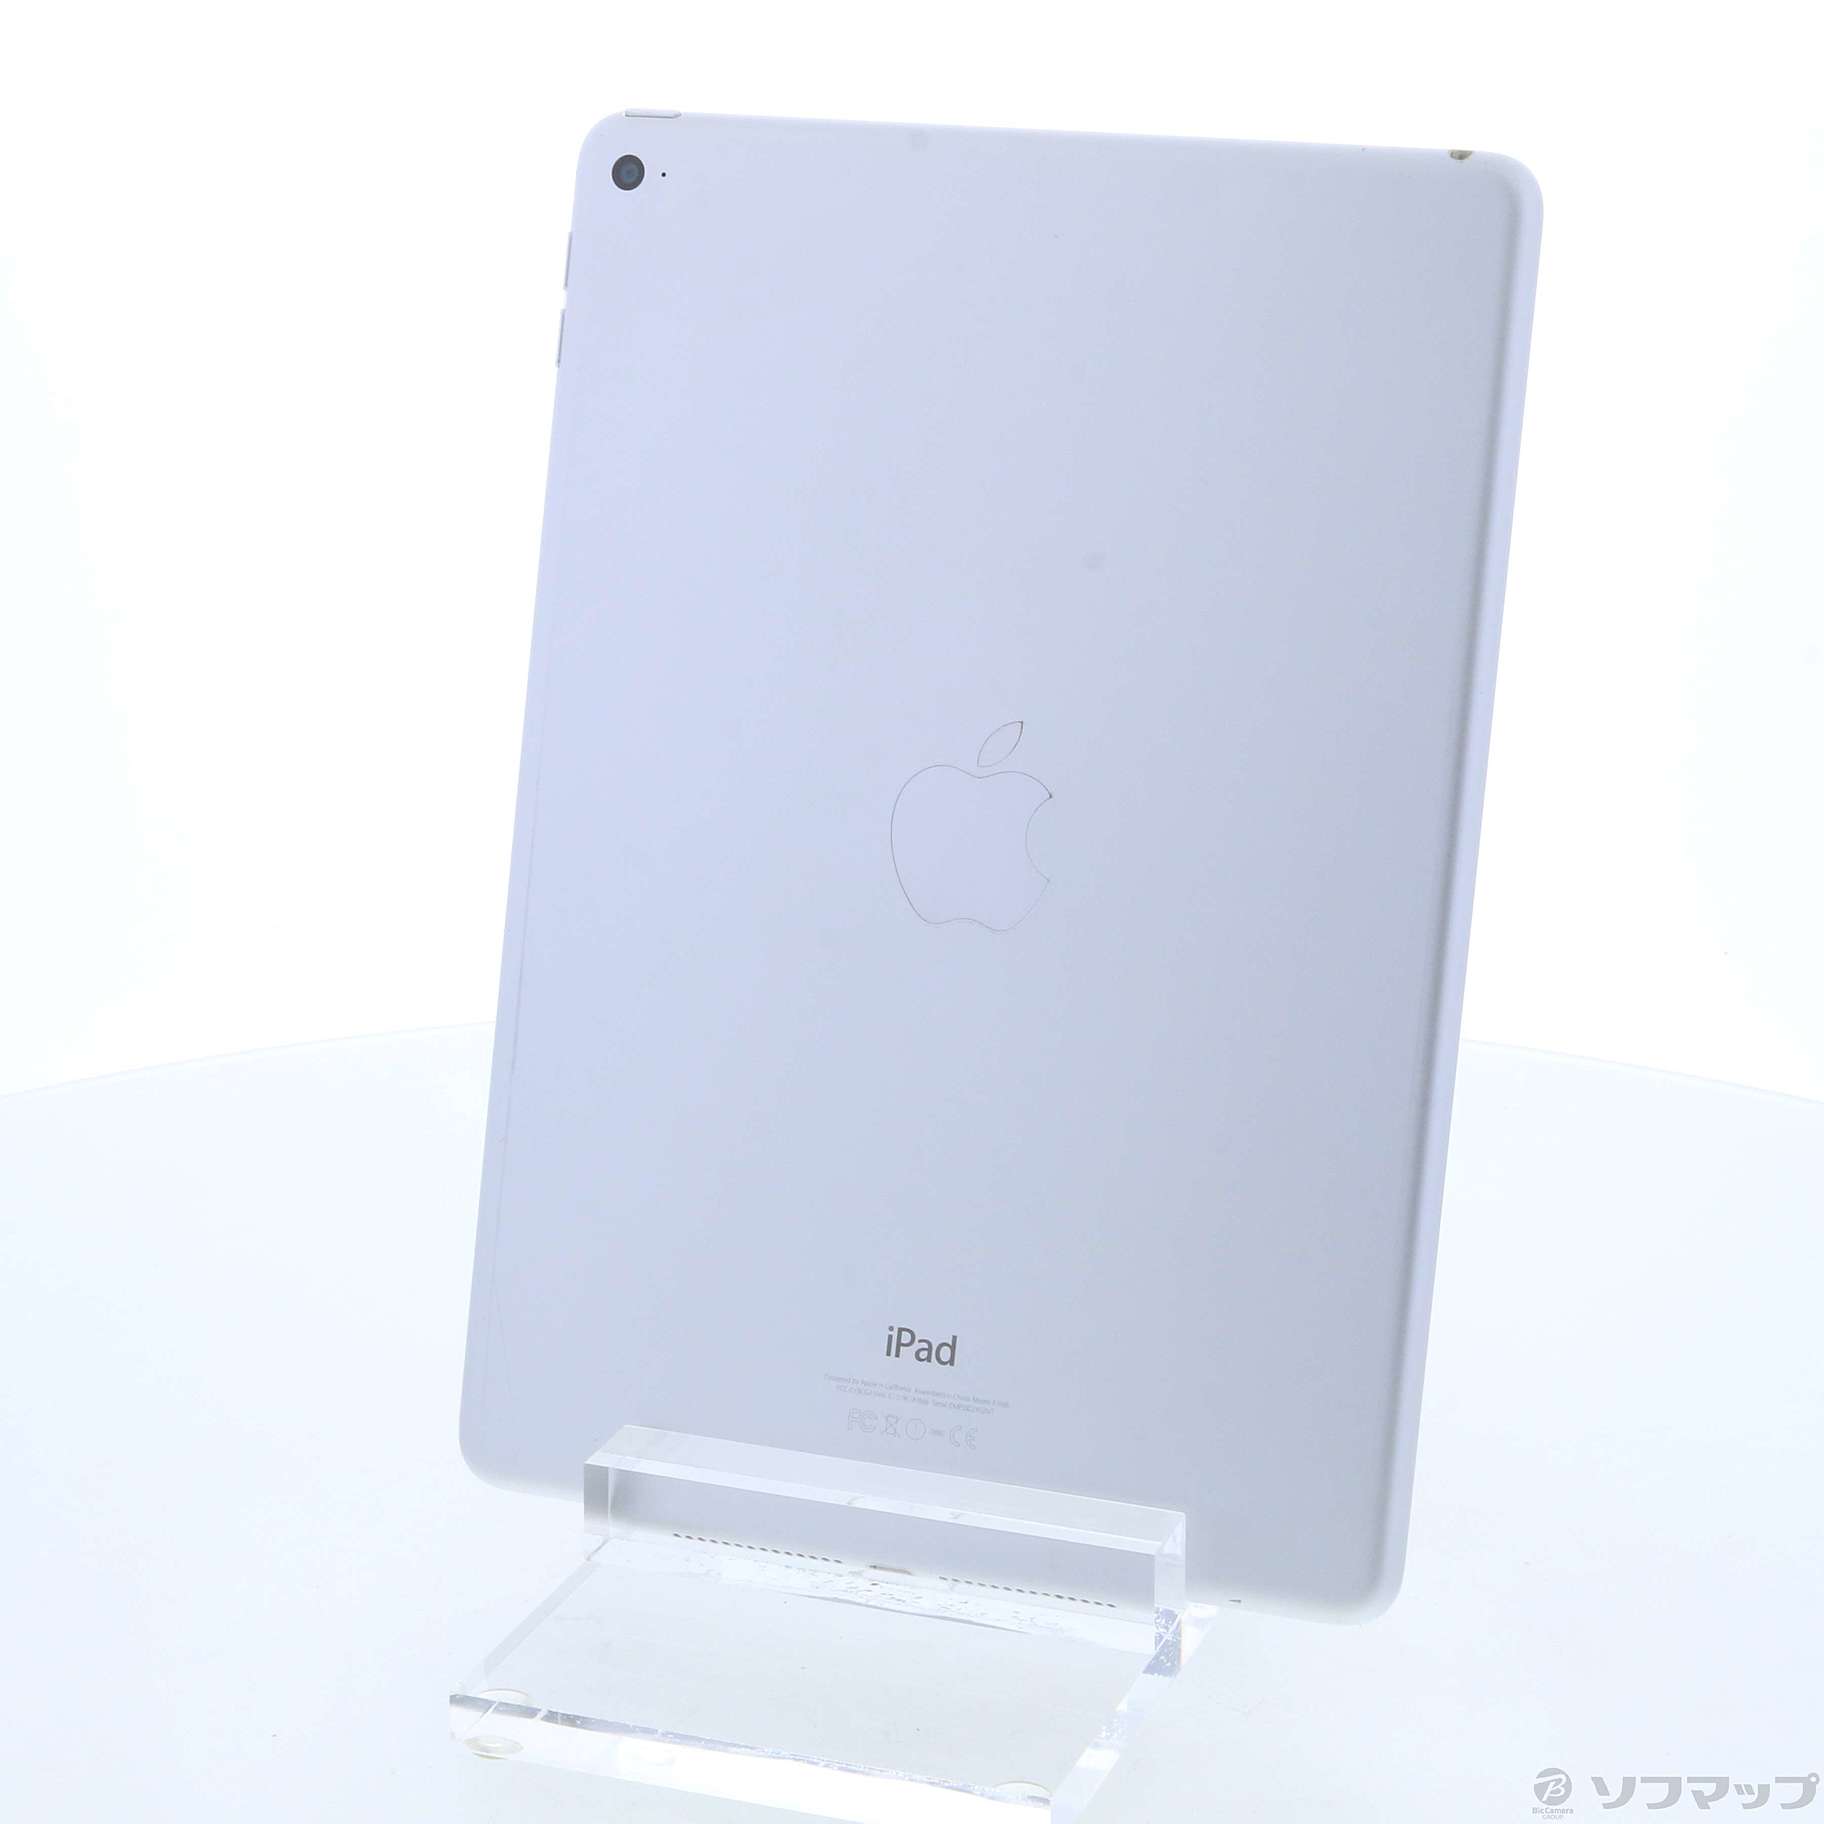 卓越-Apple - iPad Air 2/Wi-Fi/16GB(MGLW2J/A) - lab.comfamiliar.com